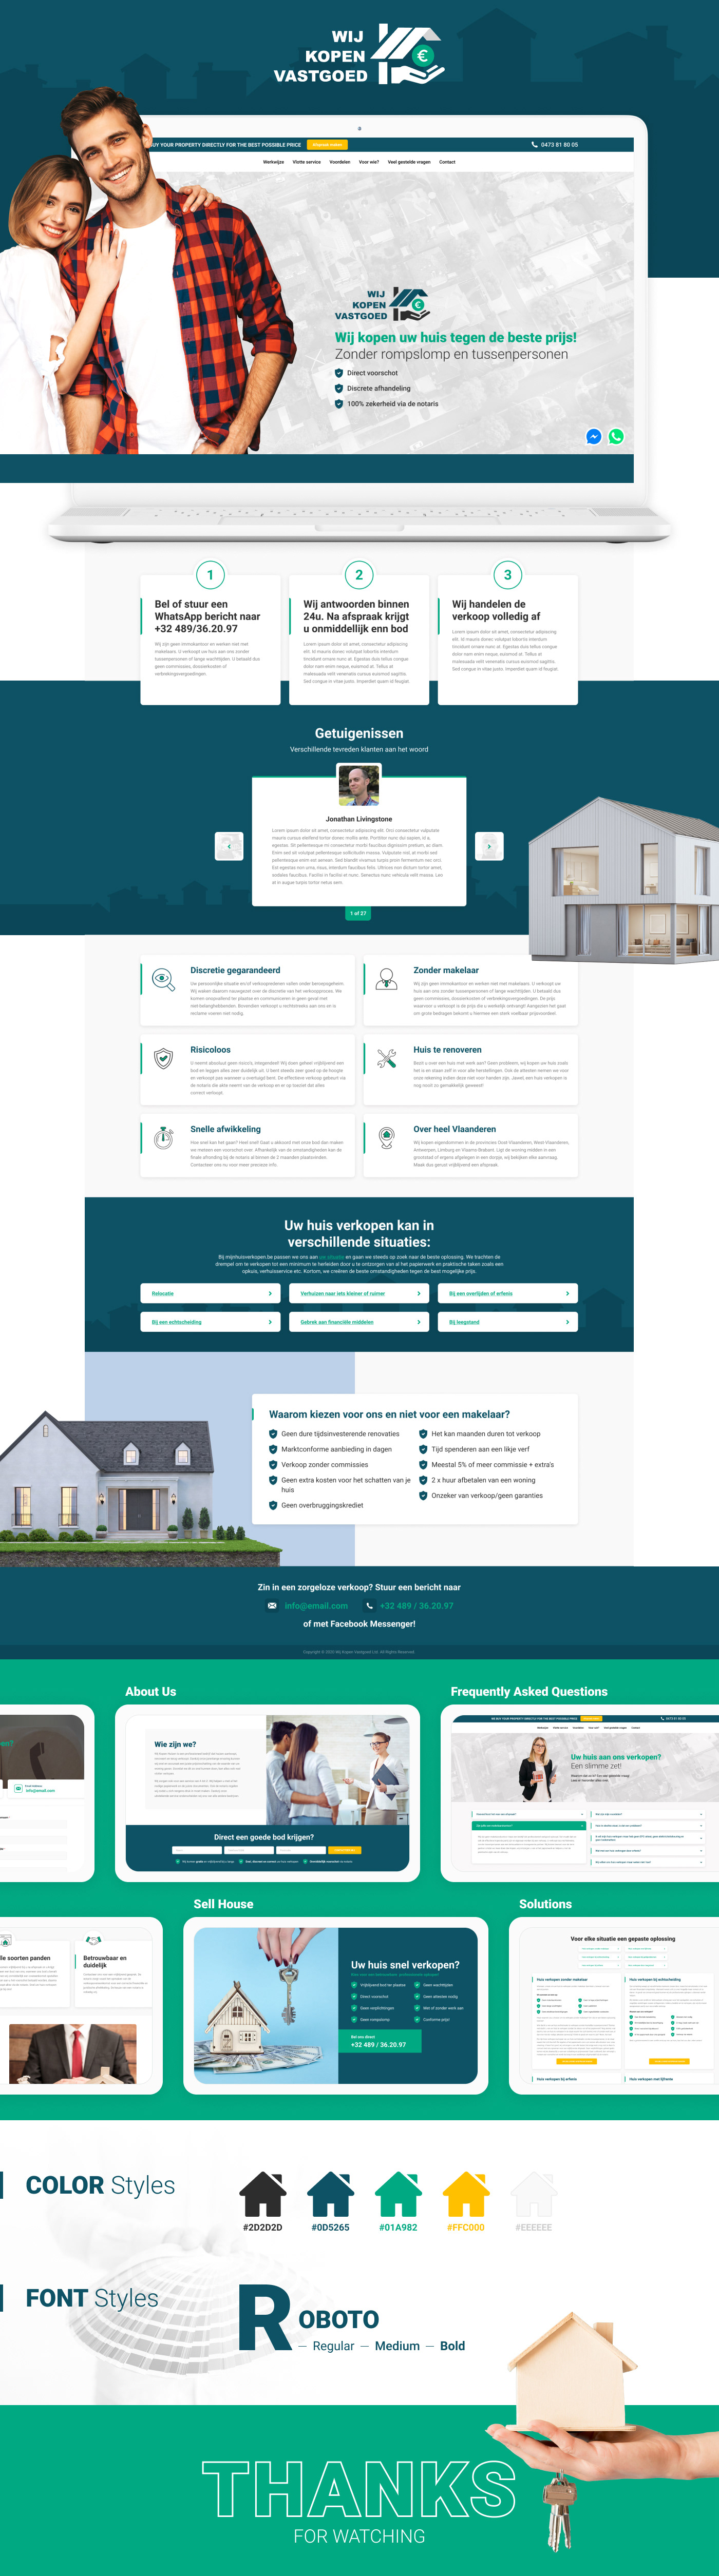 avedsoft design green house real estate UI ux Website